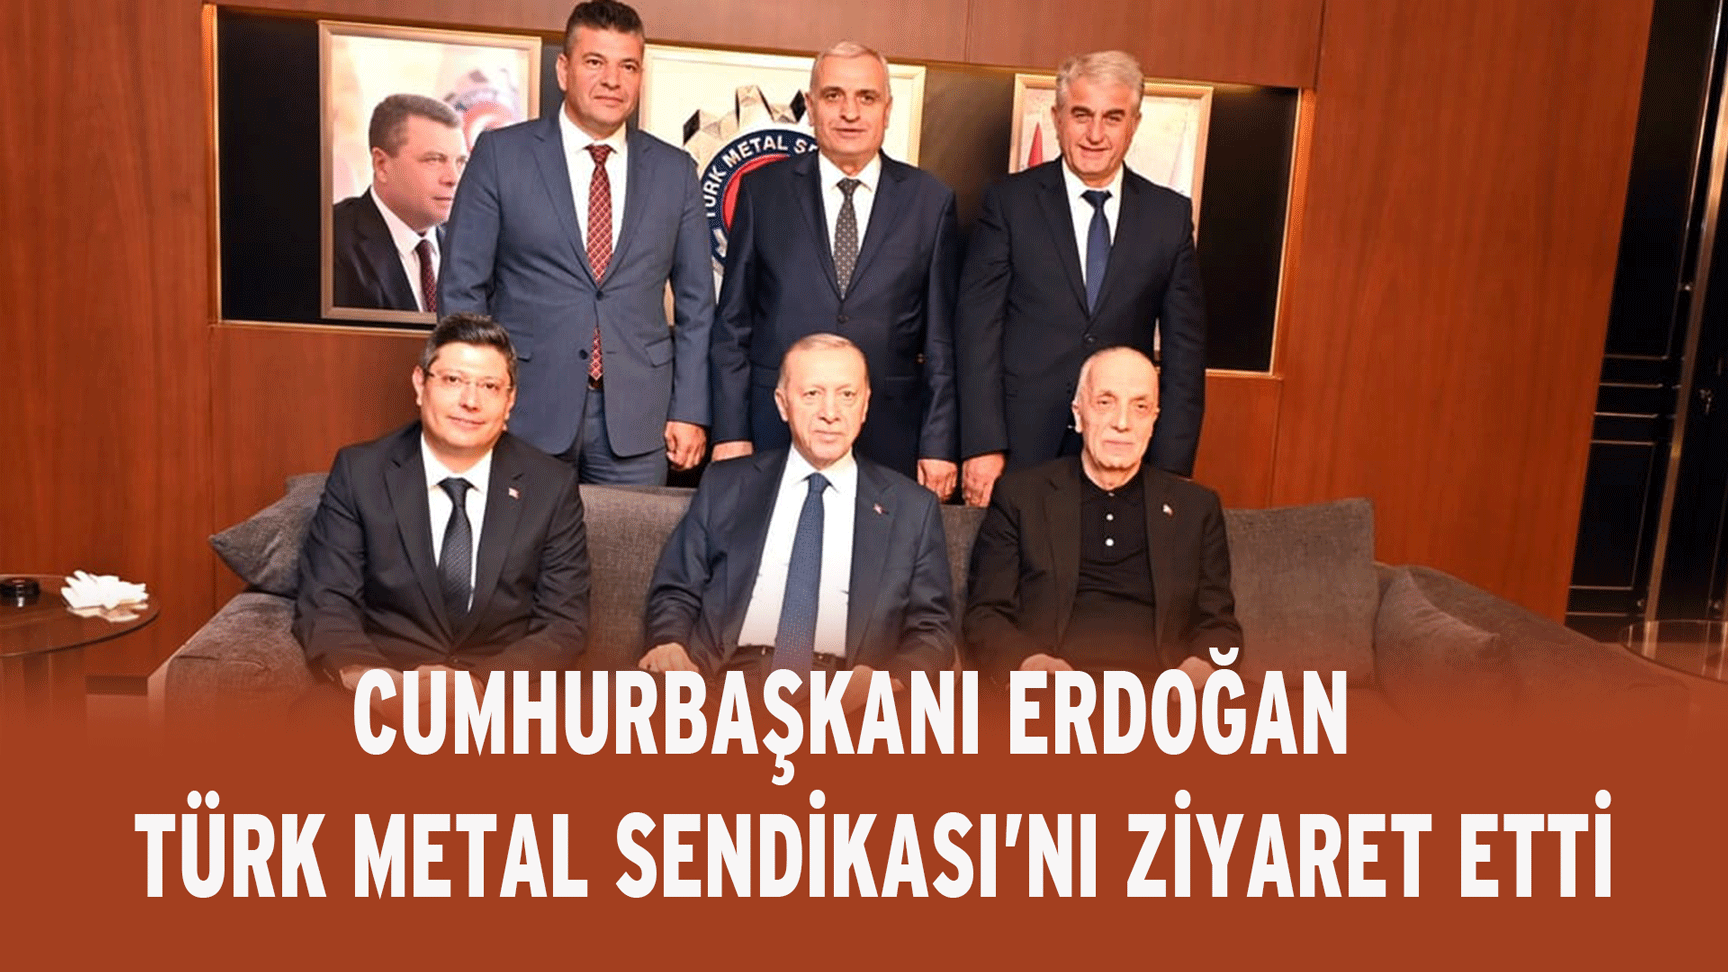 Cumhurbaşkanı Erdoğan, Türk Metal Sendikası’nı ziyaret etti